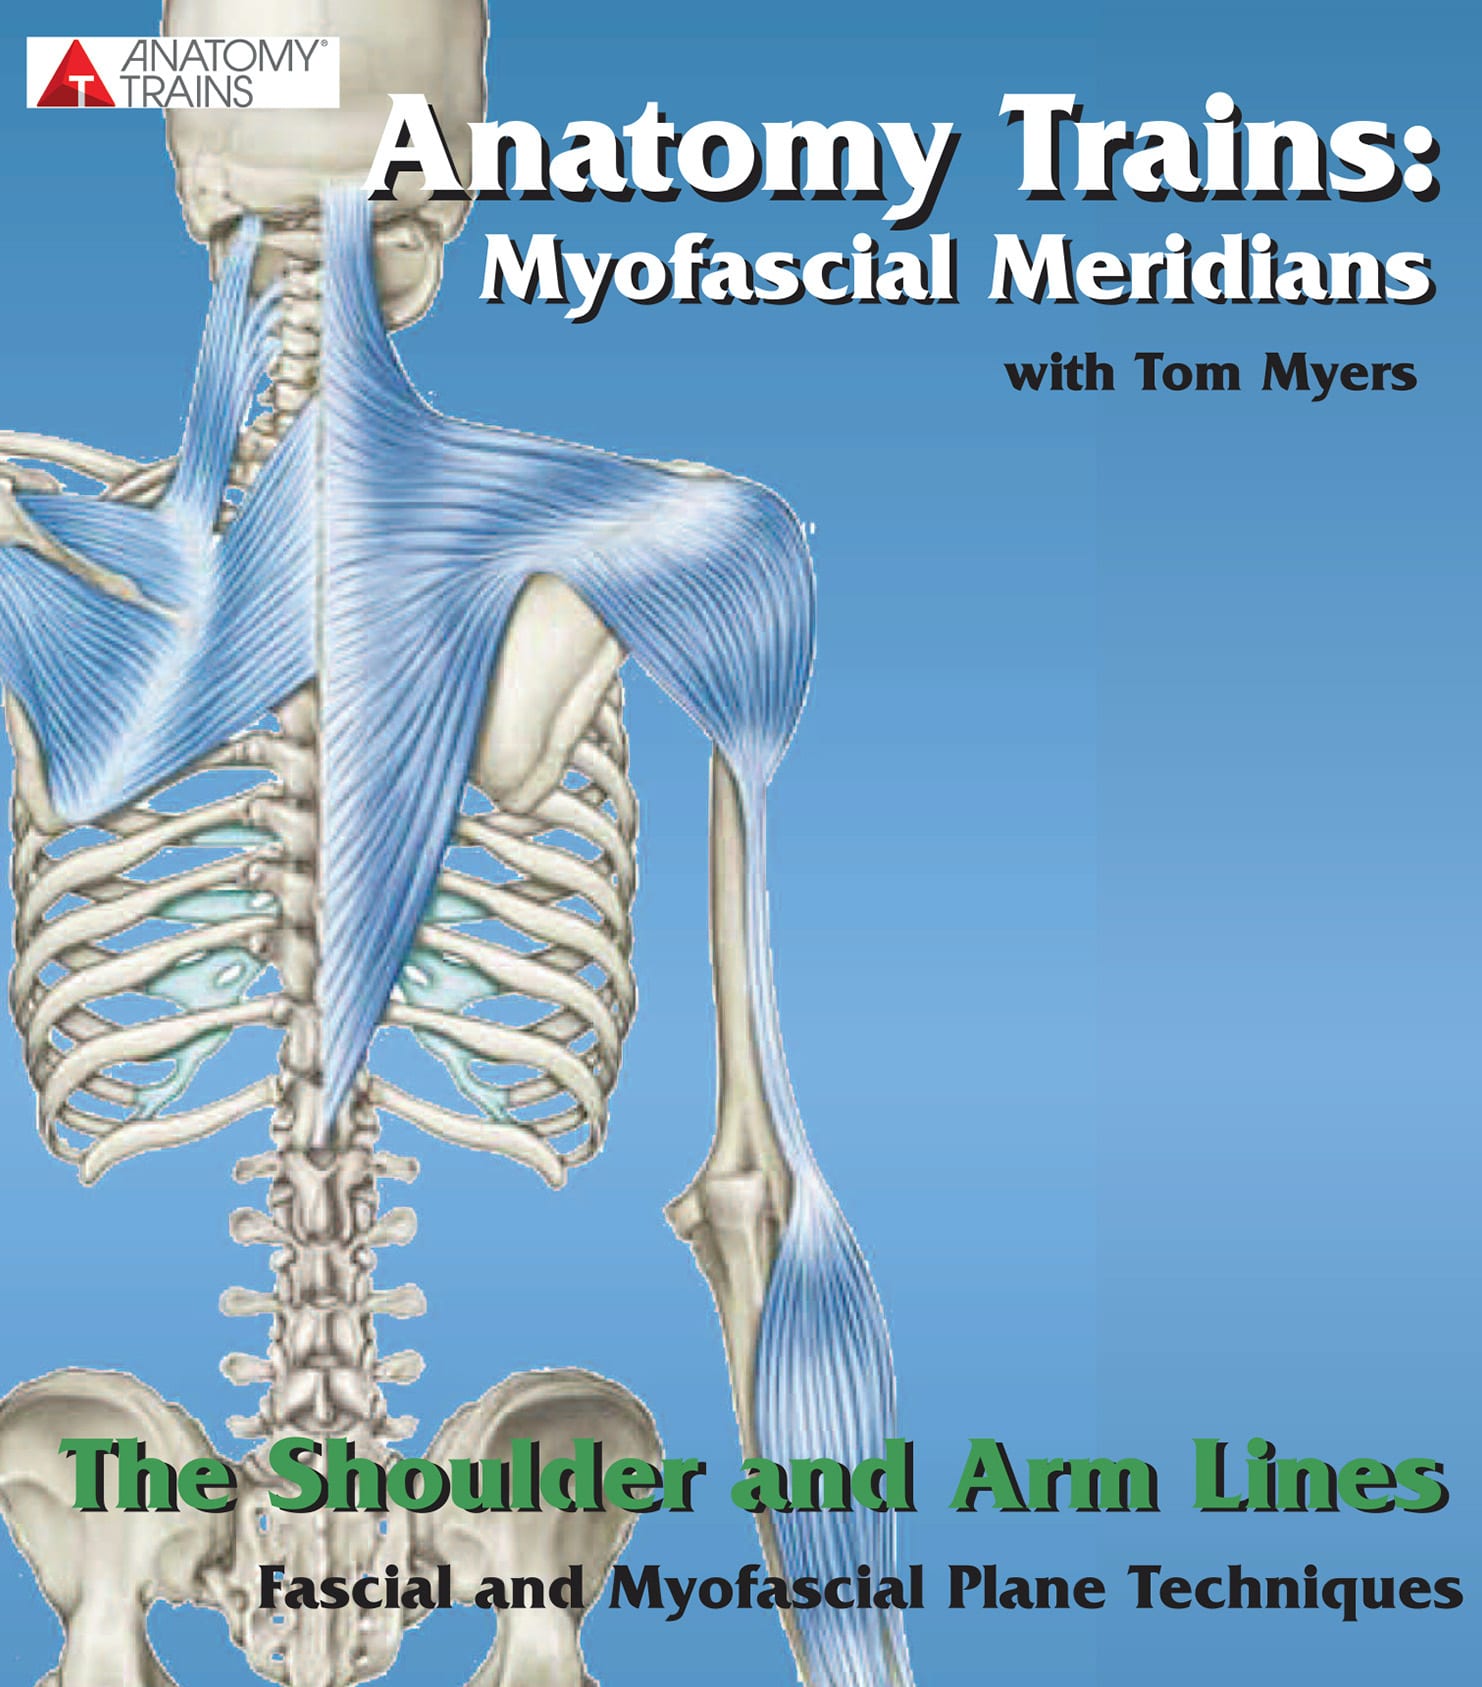 Technique Series: The Shoulder & Arm Lines Image